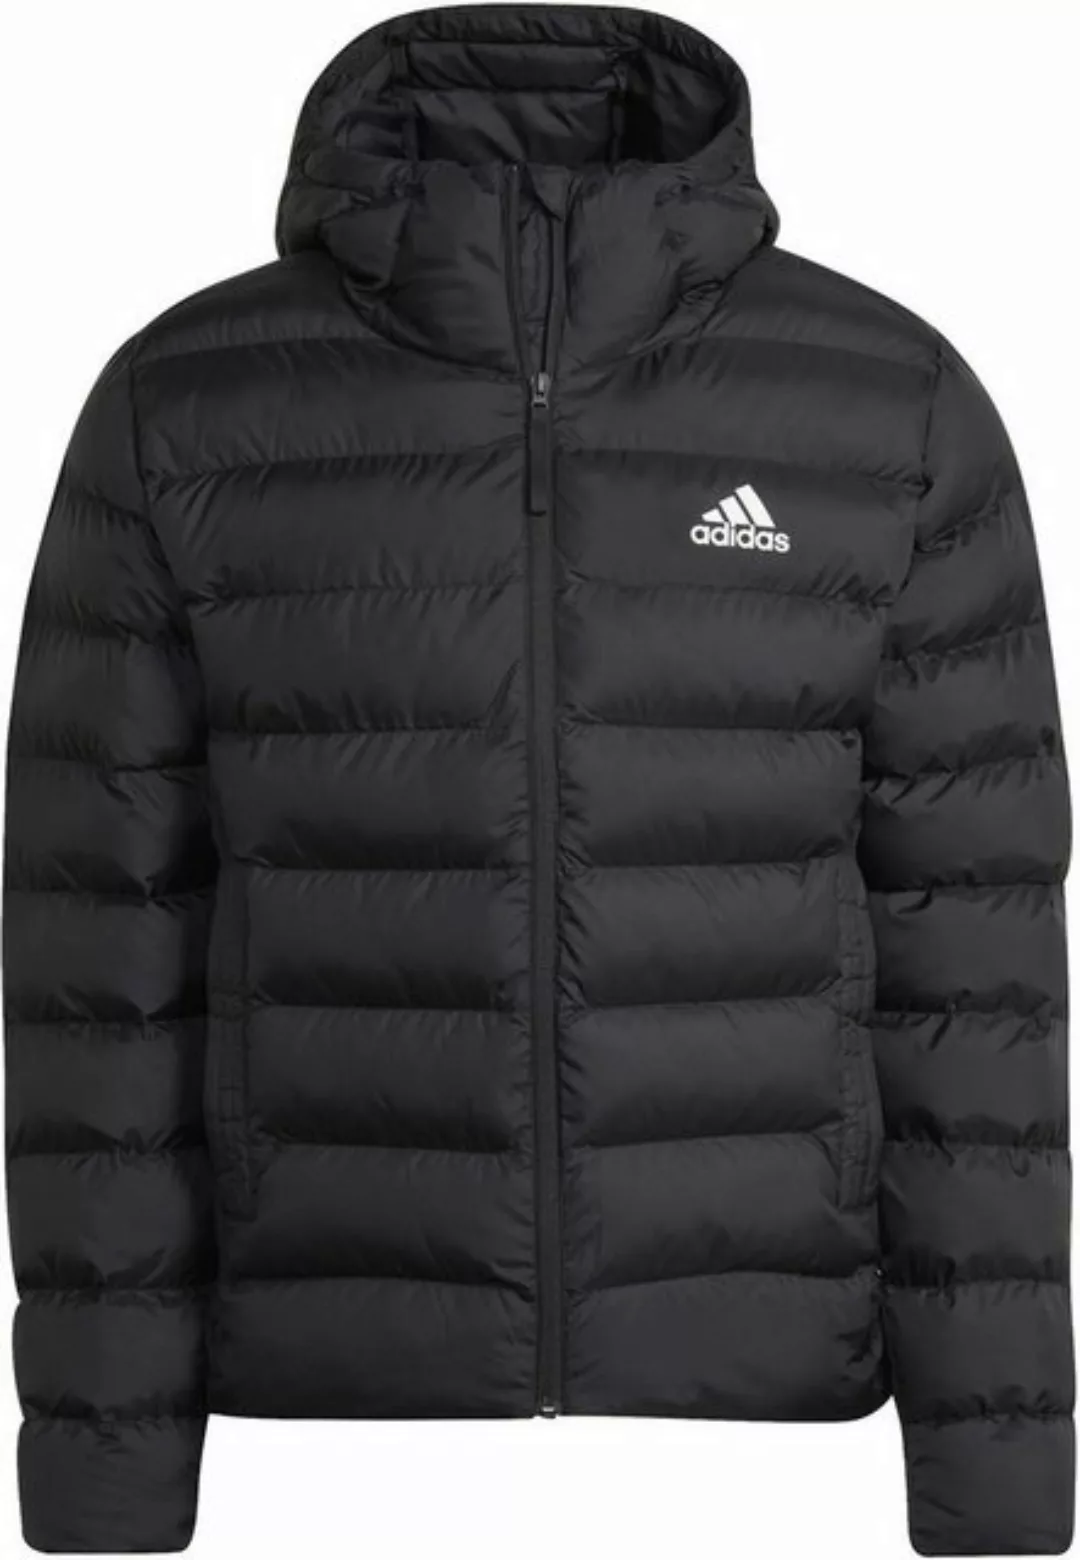 adidas Sportswear Winterjacke ADIDAS Herren Jacke SDP 2.0 Steppjacke Jacke günstig online kaufen